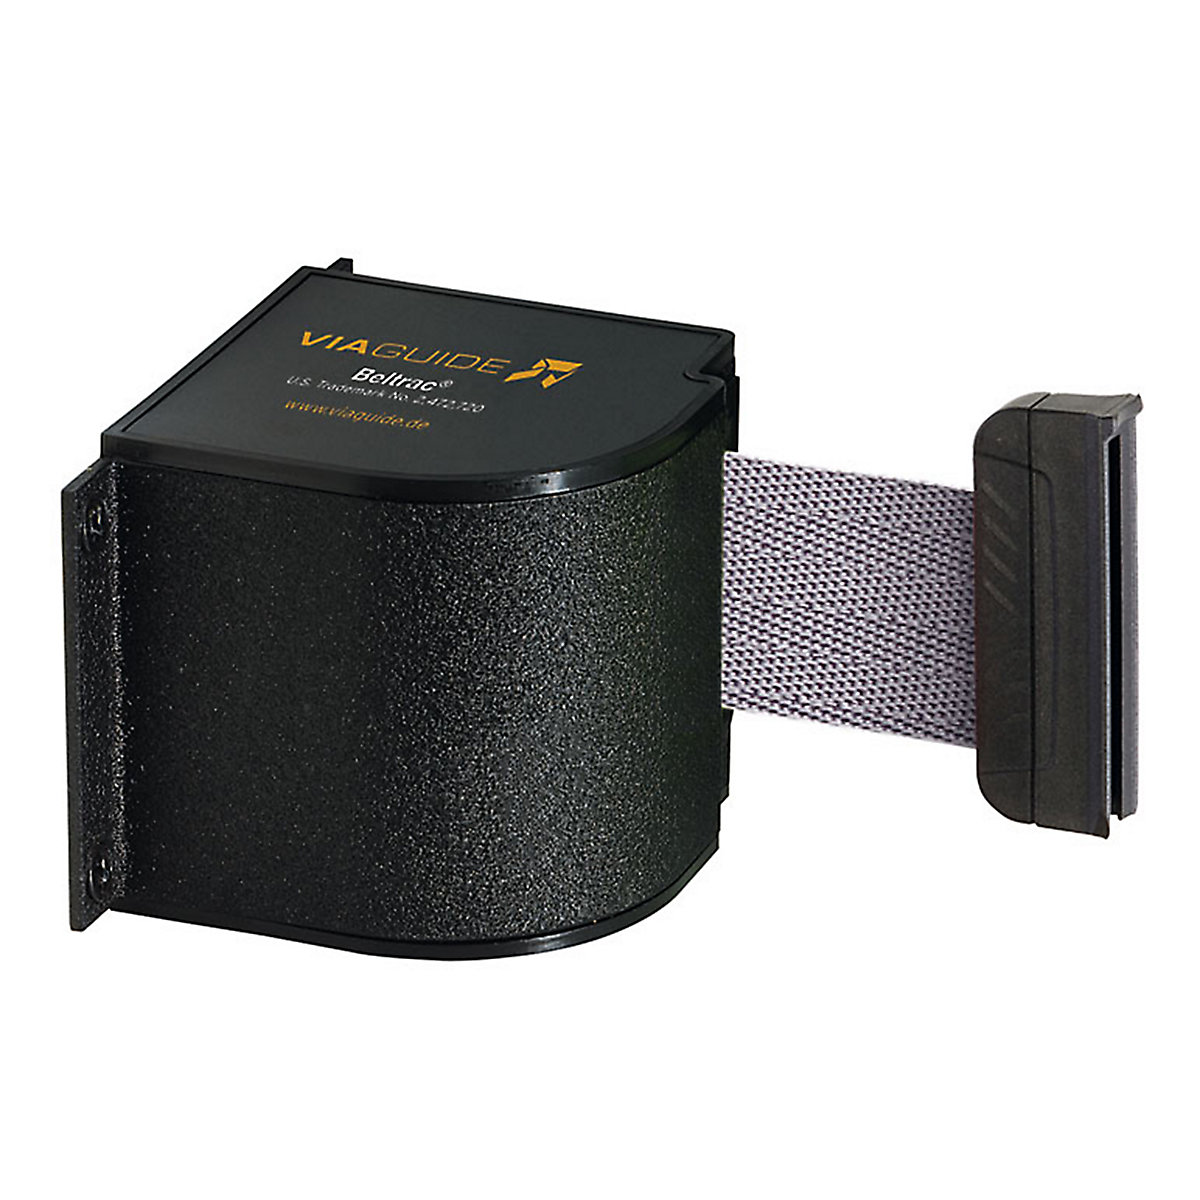 Cassete de cinta Wall Mount, extração máx. da cinta 5400 mm, cor da cinta cinzento prateado-5